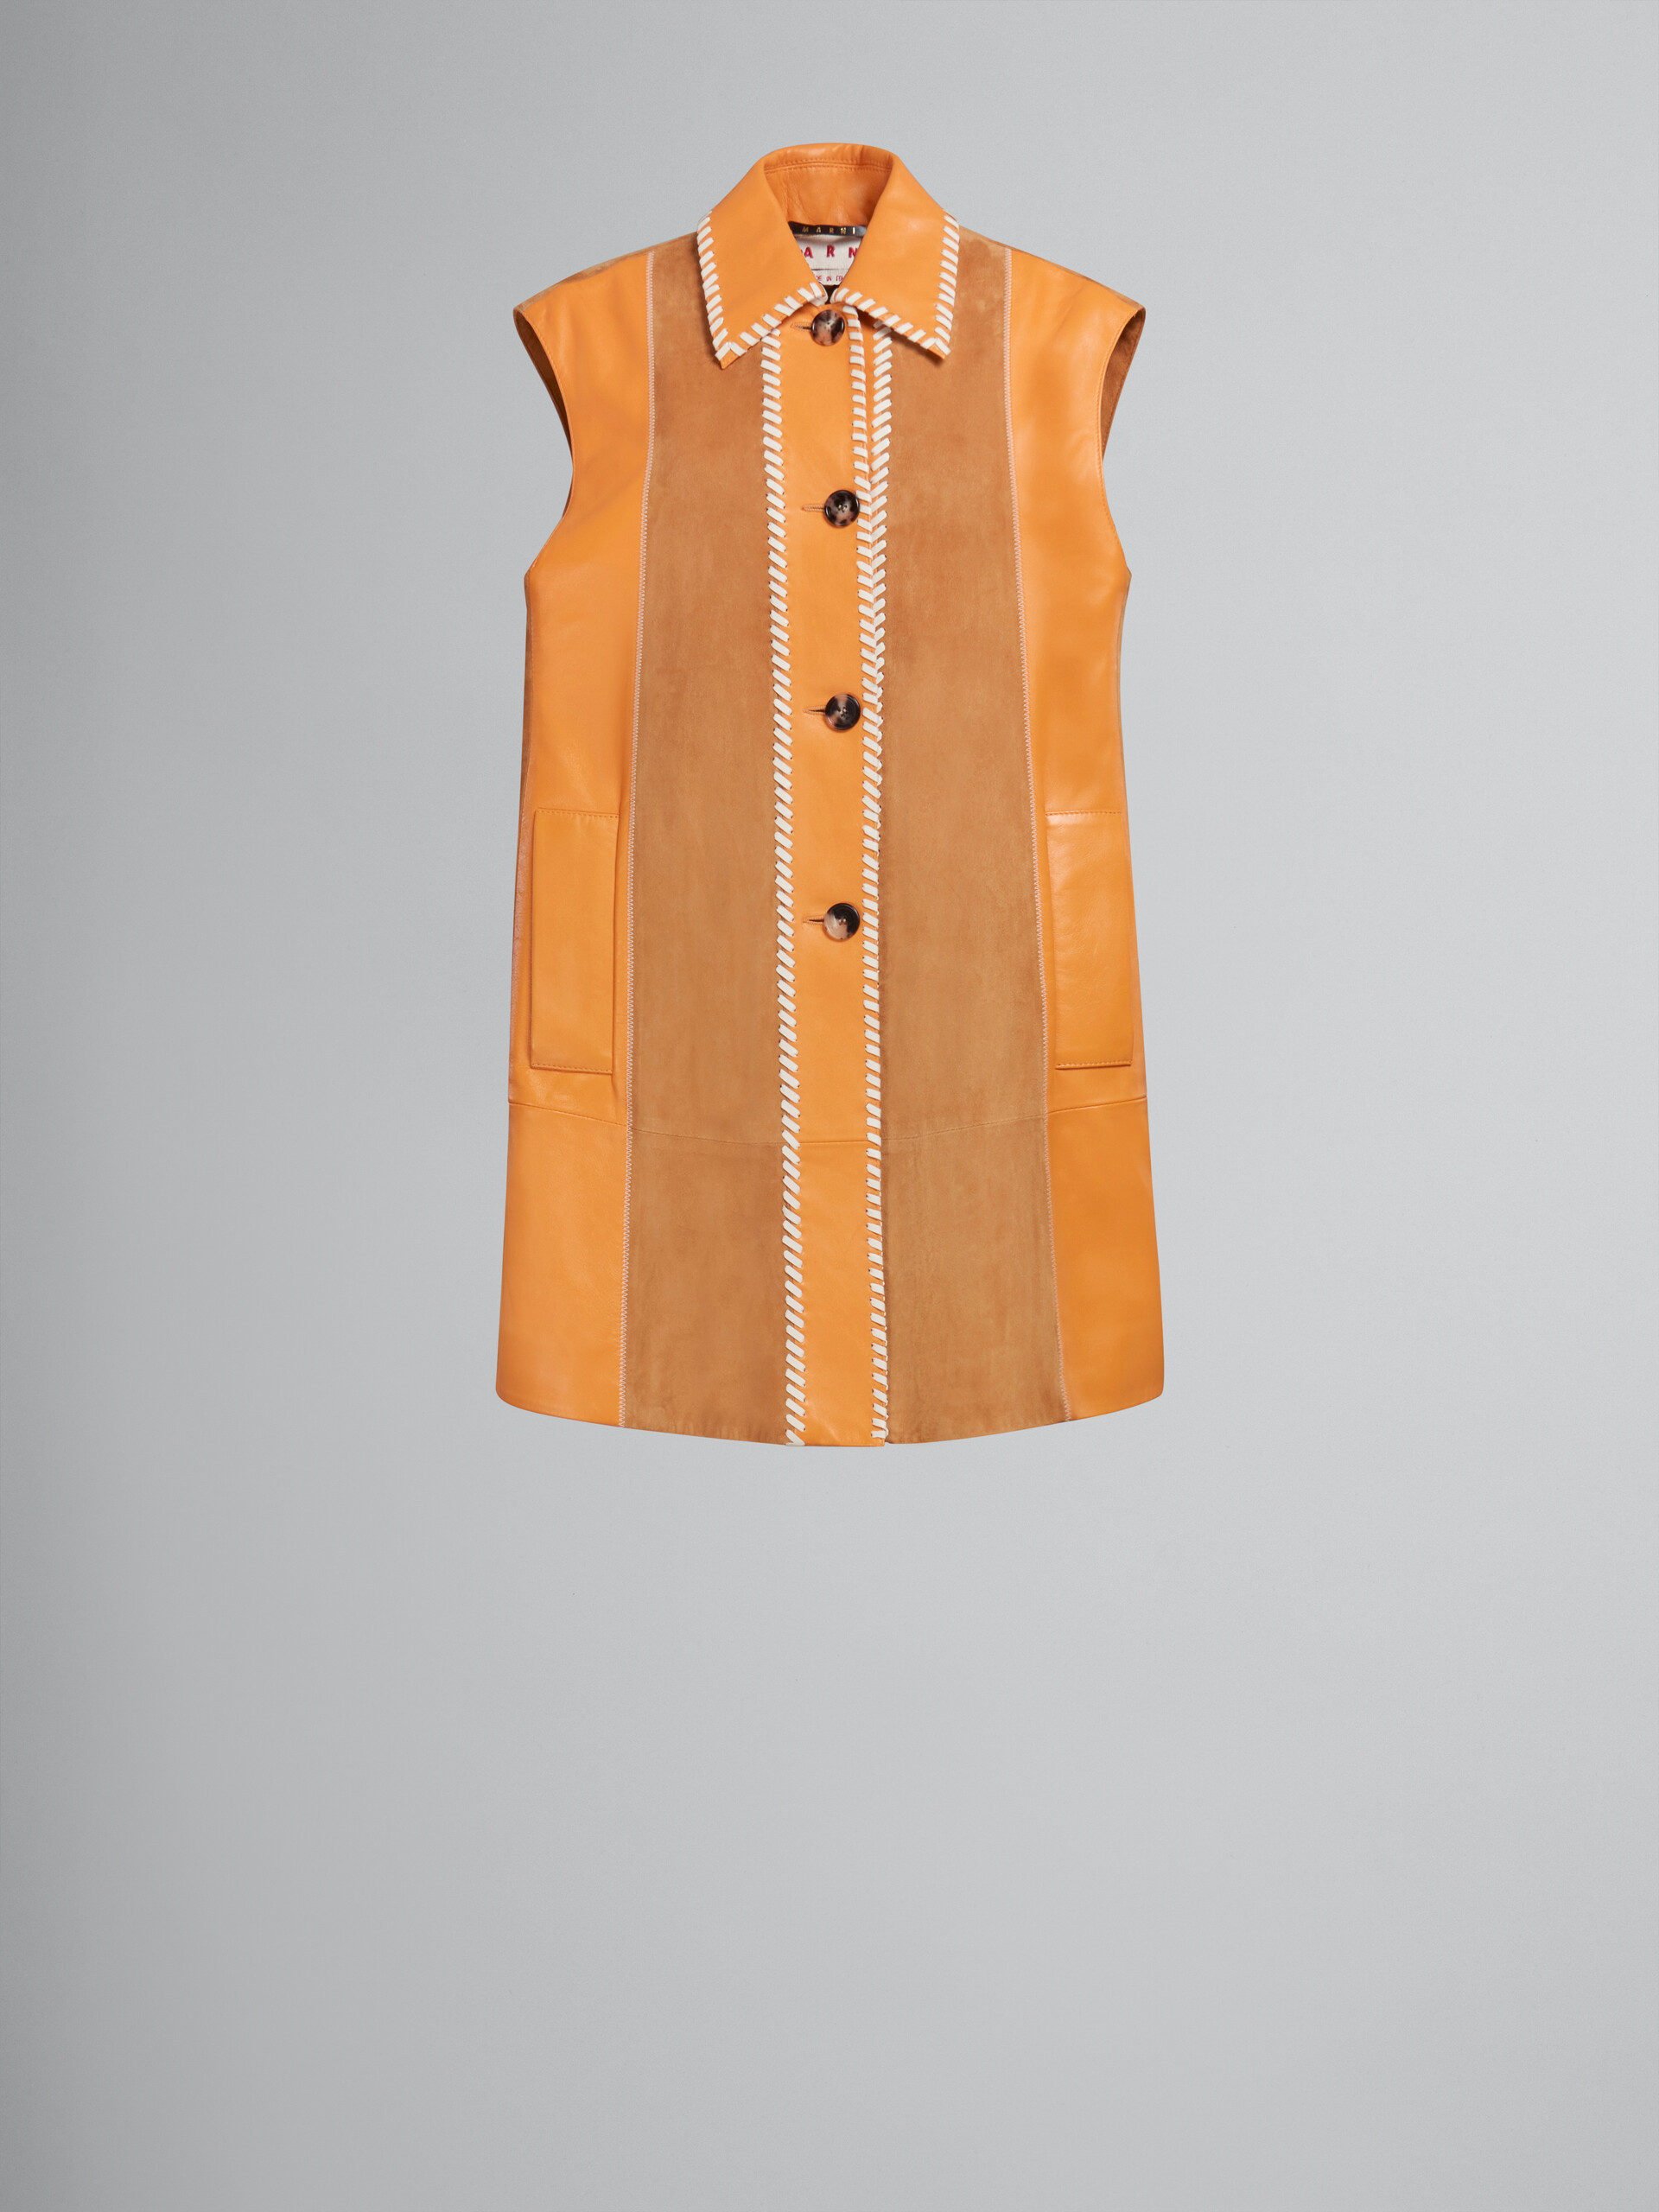 Vestido naranja efecto patchwork de napa y ante - Chaleco - Image 1